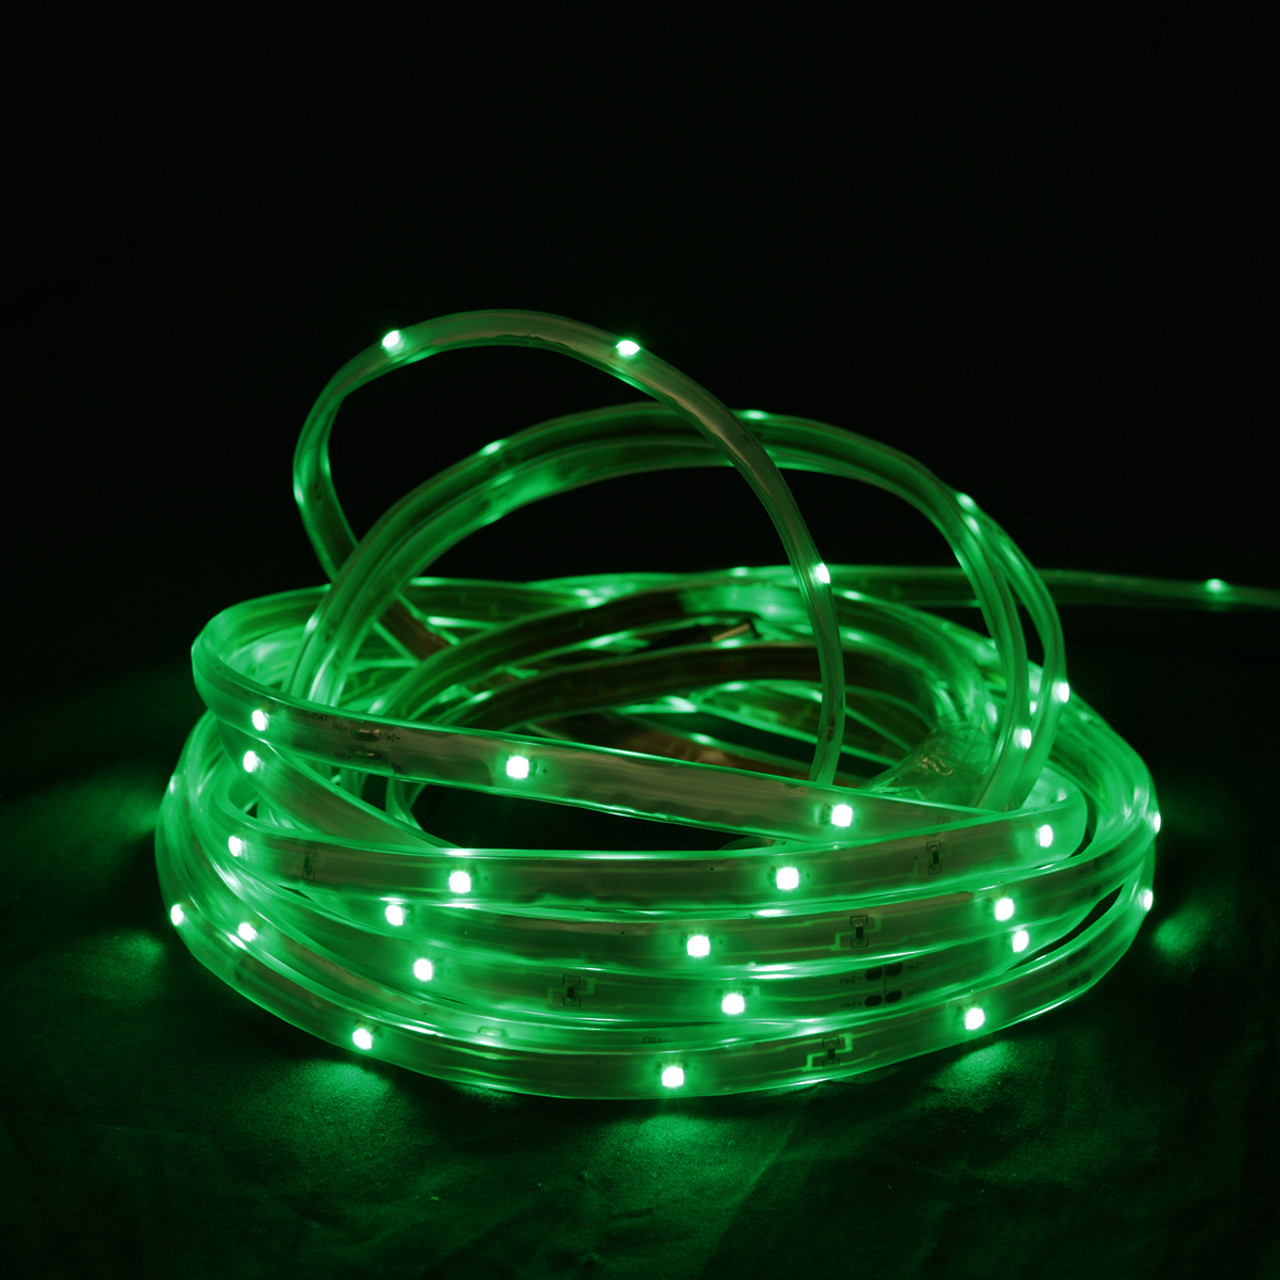 18' Green LED Outdoor Christmas Linear Tape Lighting - White